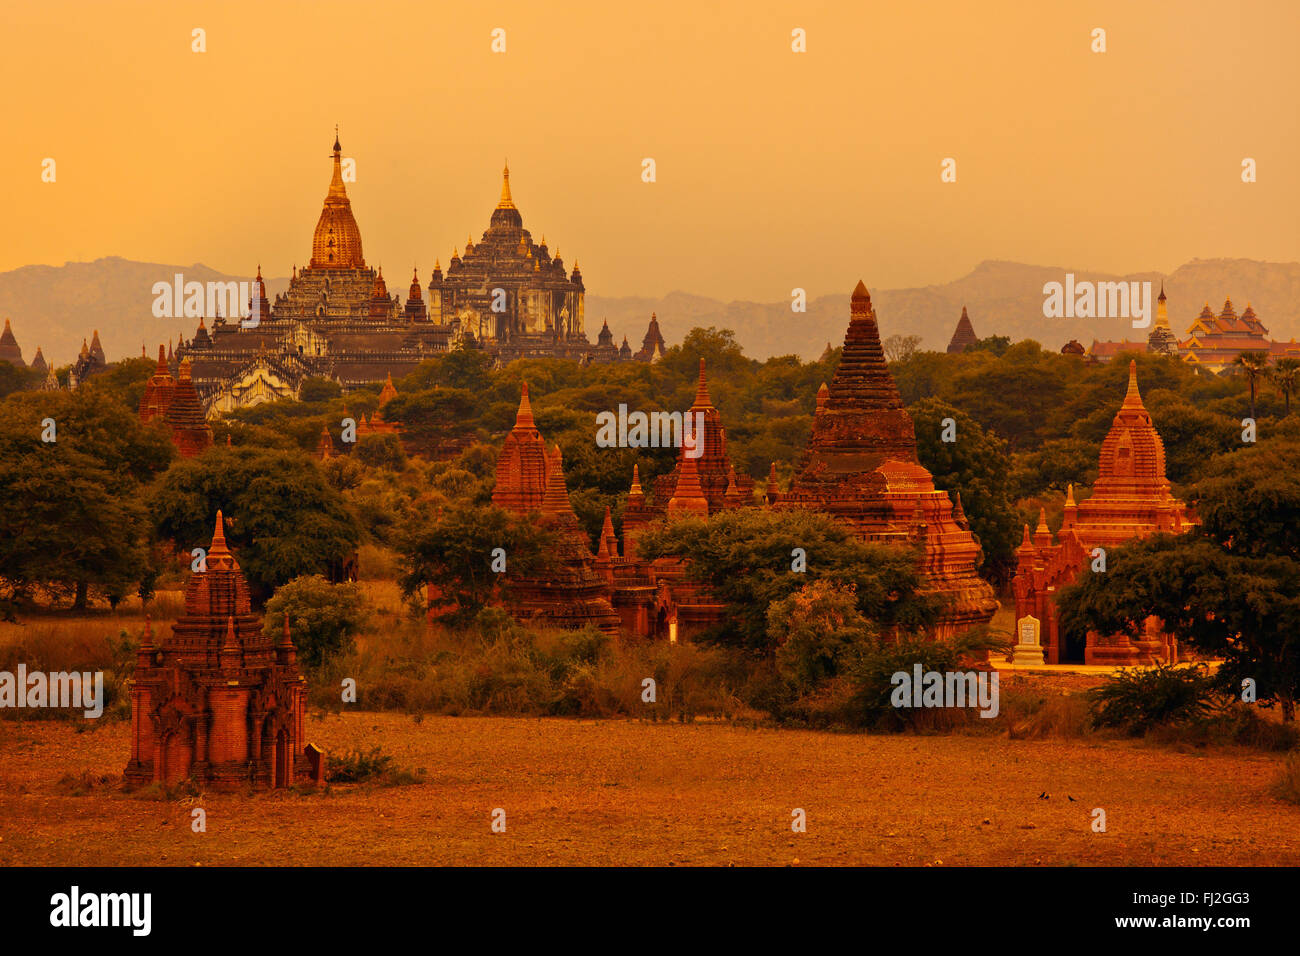 Vue de l'OAKKYAUNGGYI TEMPLE d'Ananda et THATBYINNYU temples et les plaines de Bagan - Myanmar Banque D'Images